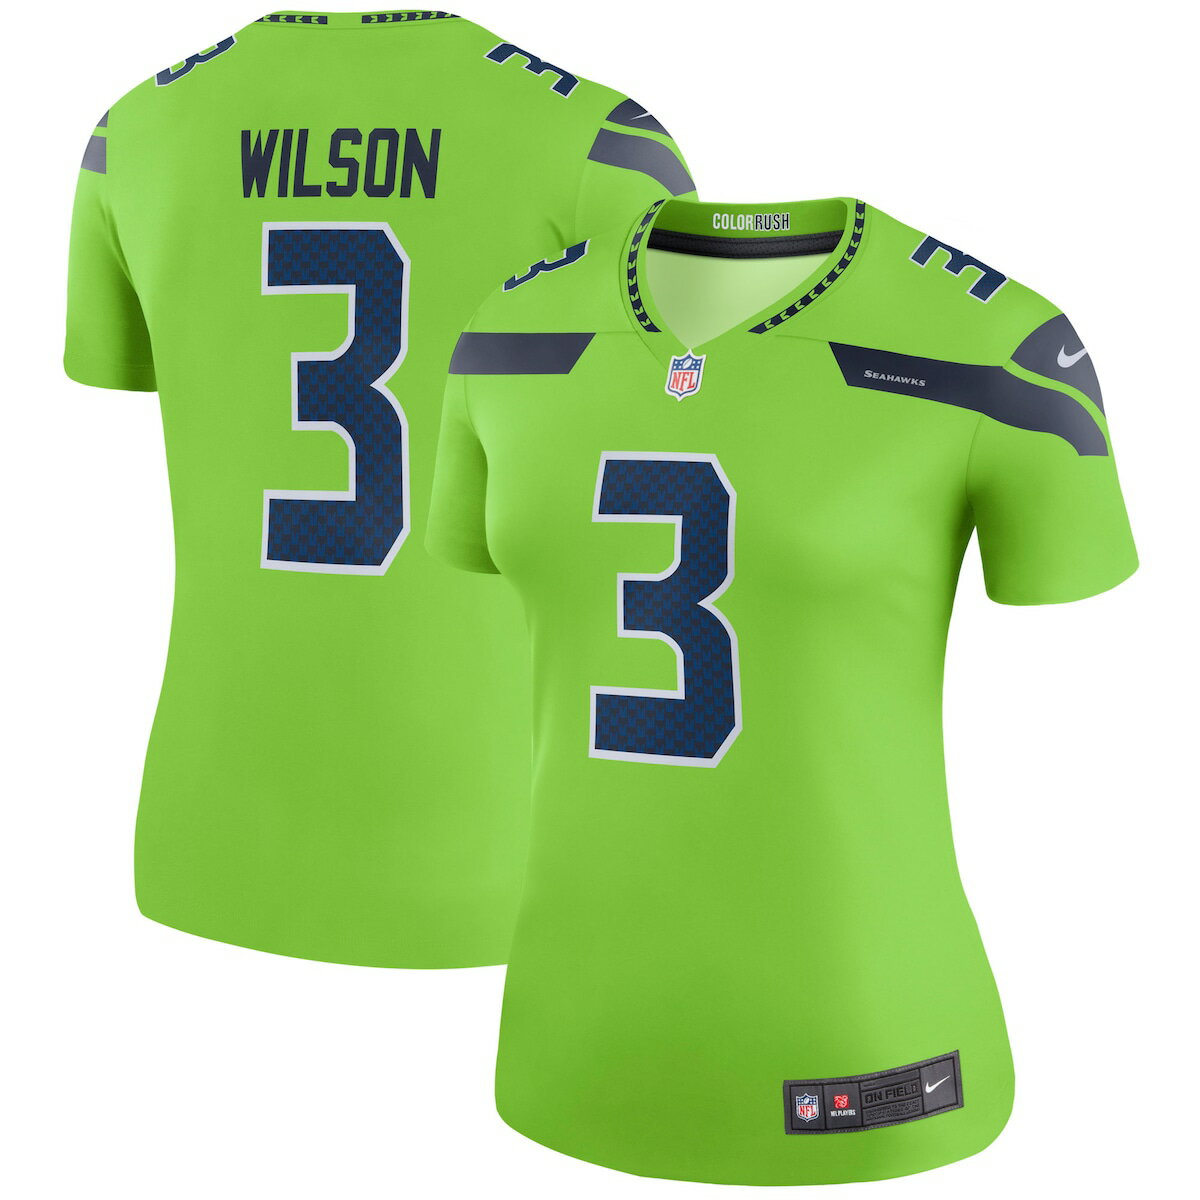 NFL シーホークス ラッセル・ウィルソン ユニフォーム Nike ナイキ レディース グリーン (Womens Nike Legend NFL Jersey)